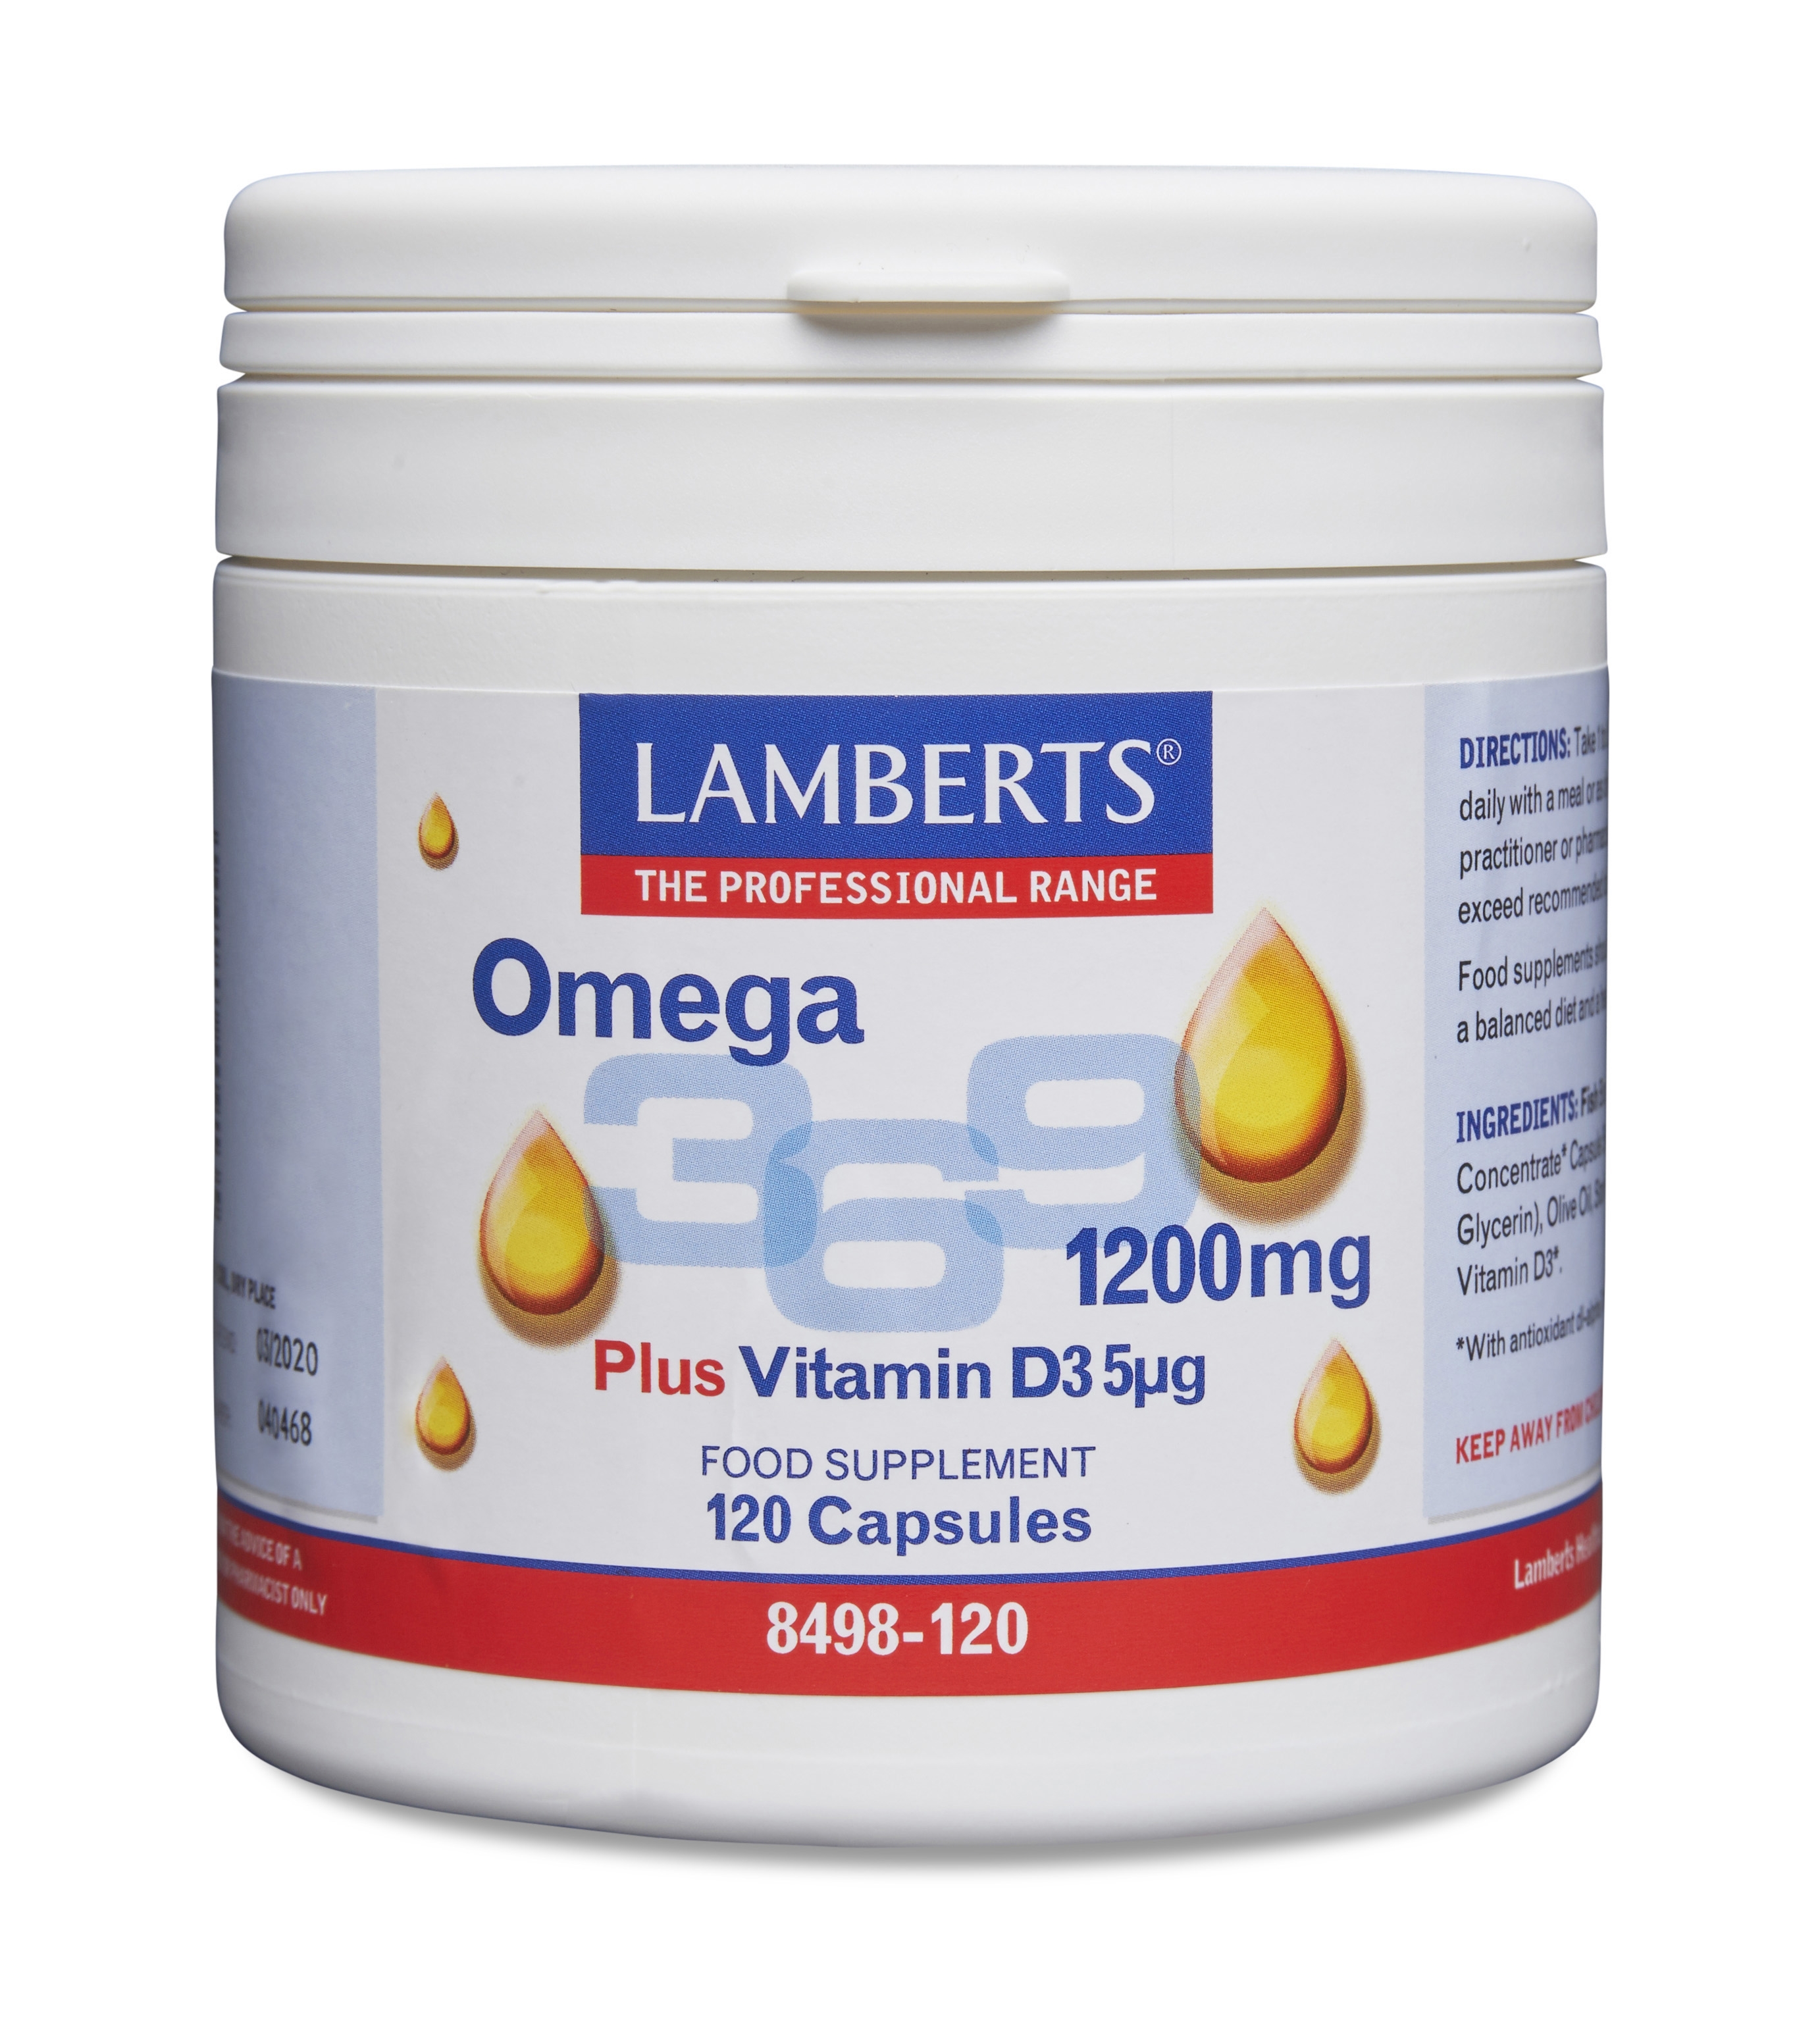 Omega 3-6-9 Fiskolja med gurkört & olivolja + Vitamin D - 1200mg